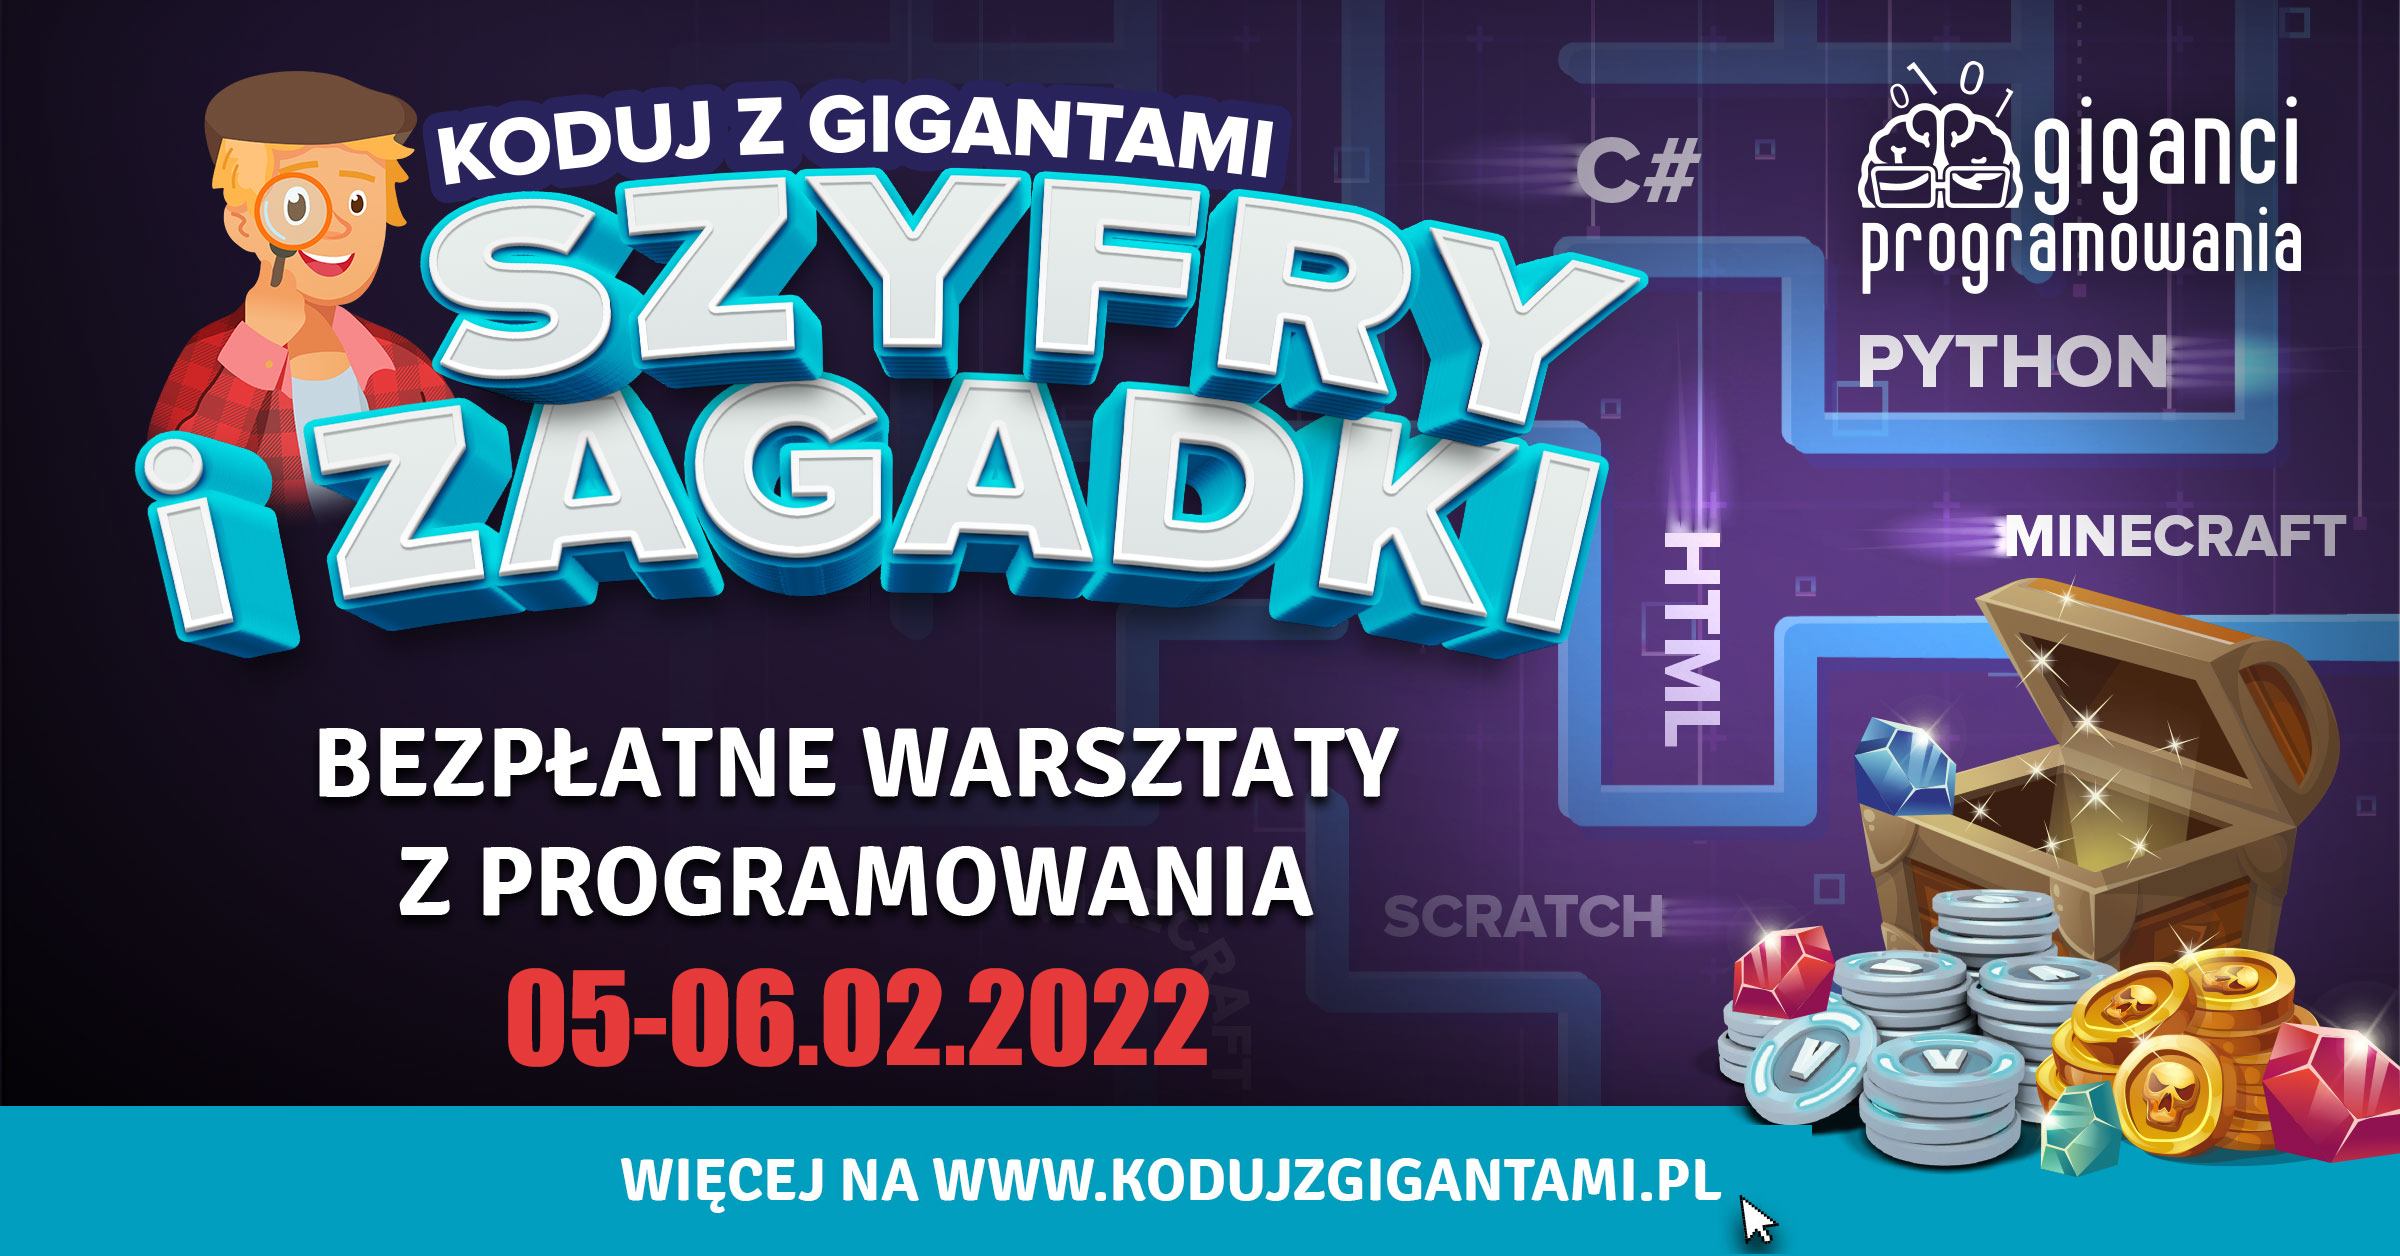 Wydarzenie: Koduj z Gigantami – Szyfry i Zagadki, Kiedy? 2022-02-05 09:00, Gdzie? 